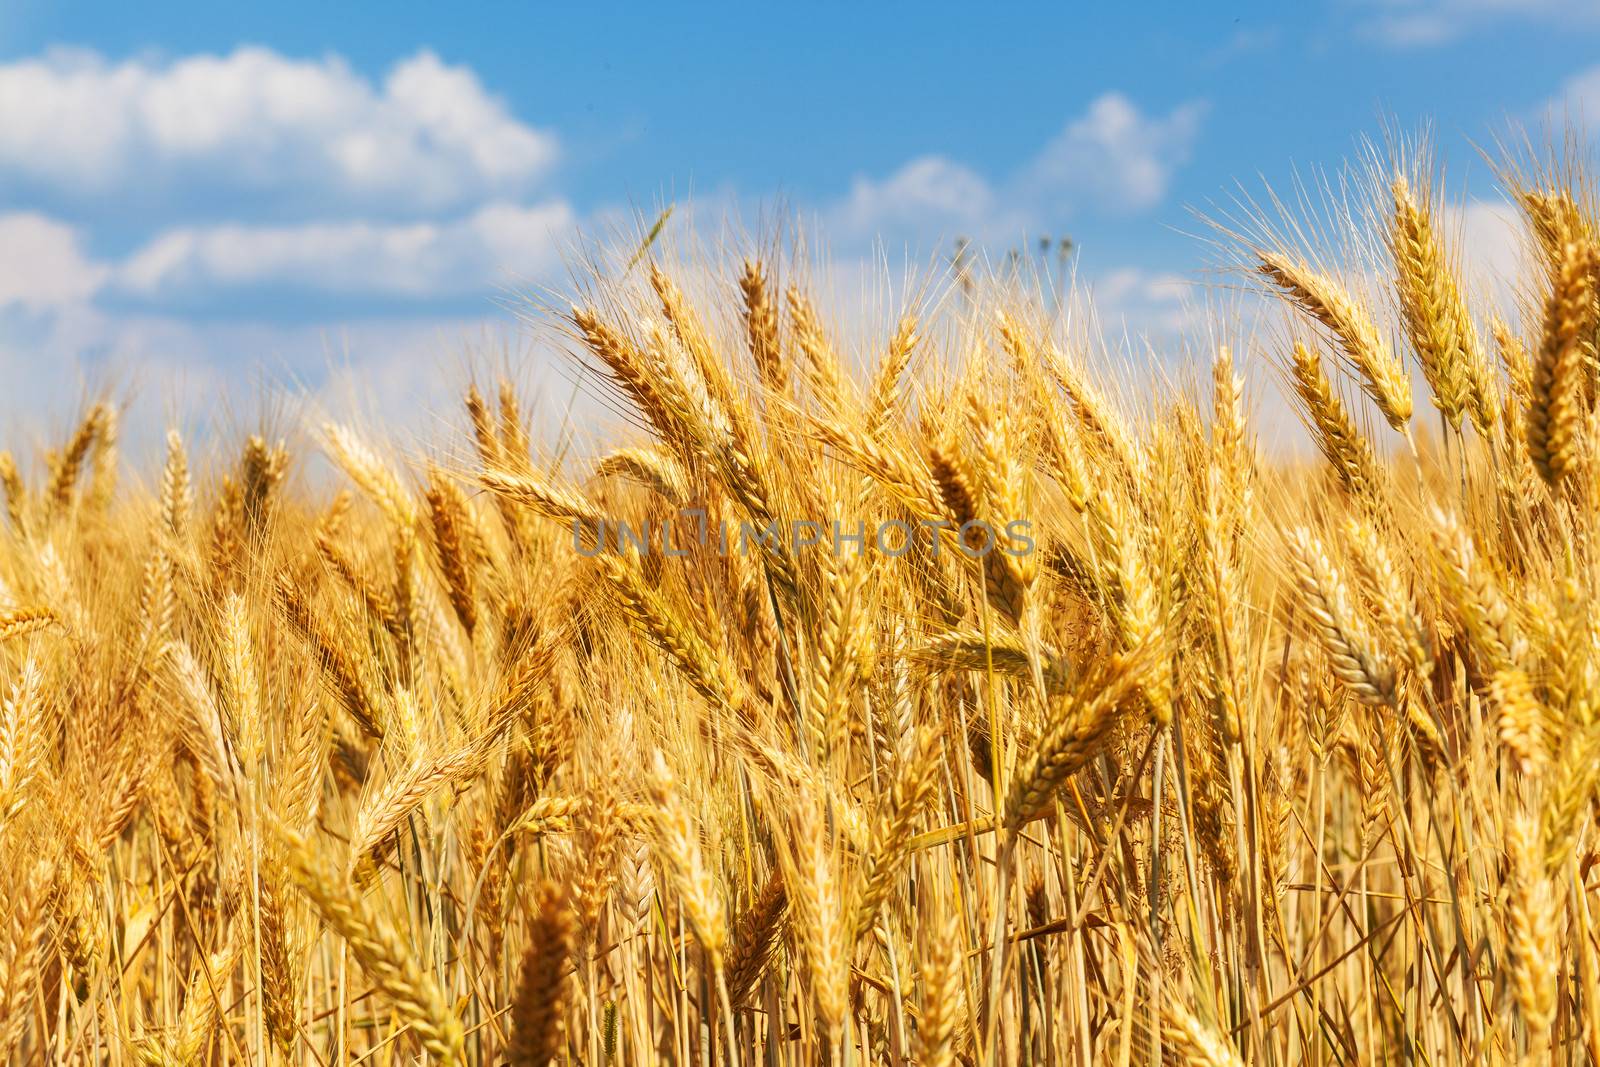 Wheat field, blue sky by TristanBM